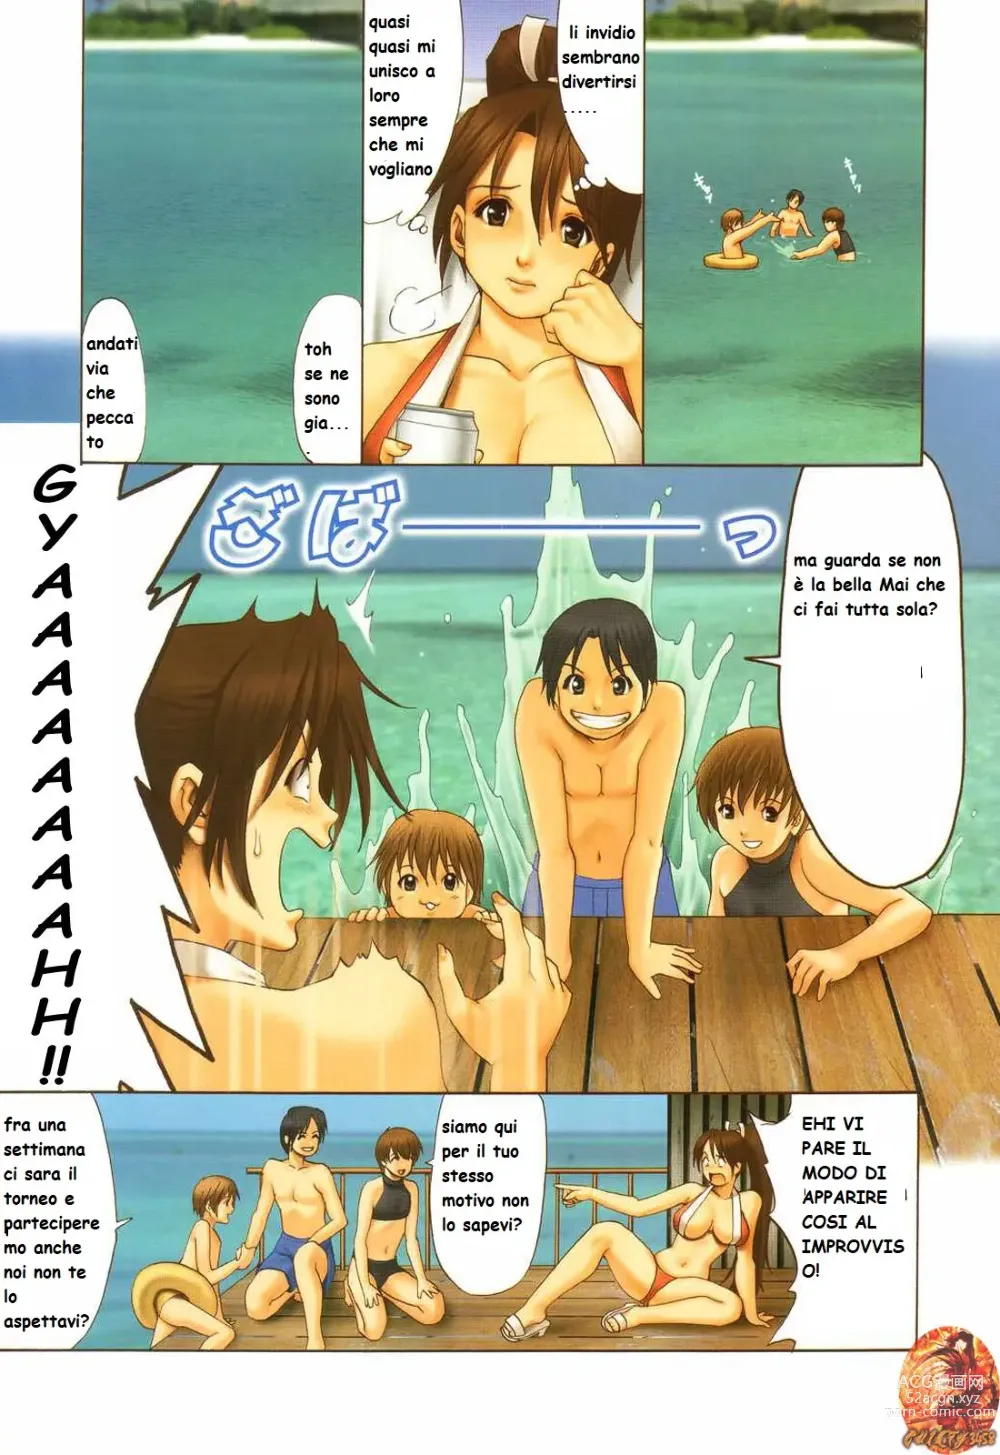 Page 3 of doujinshi mai si diverte con tre ragazzi